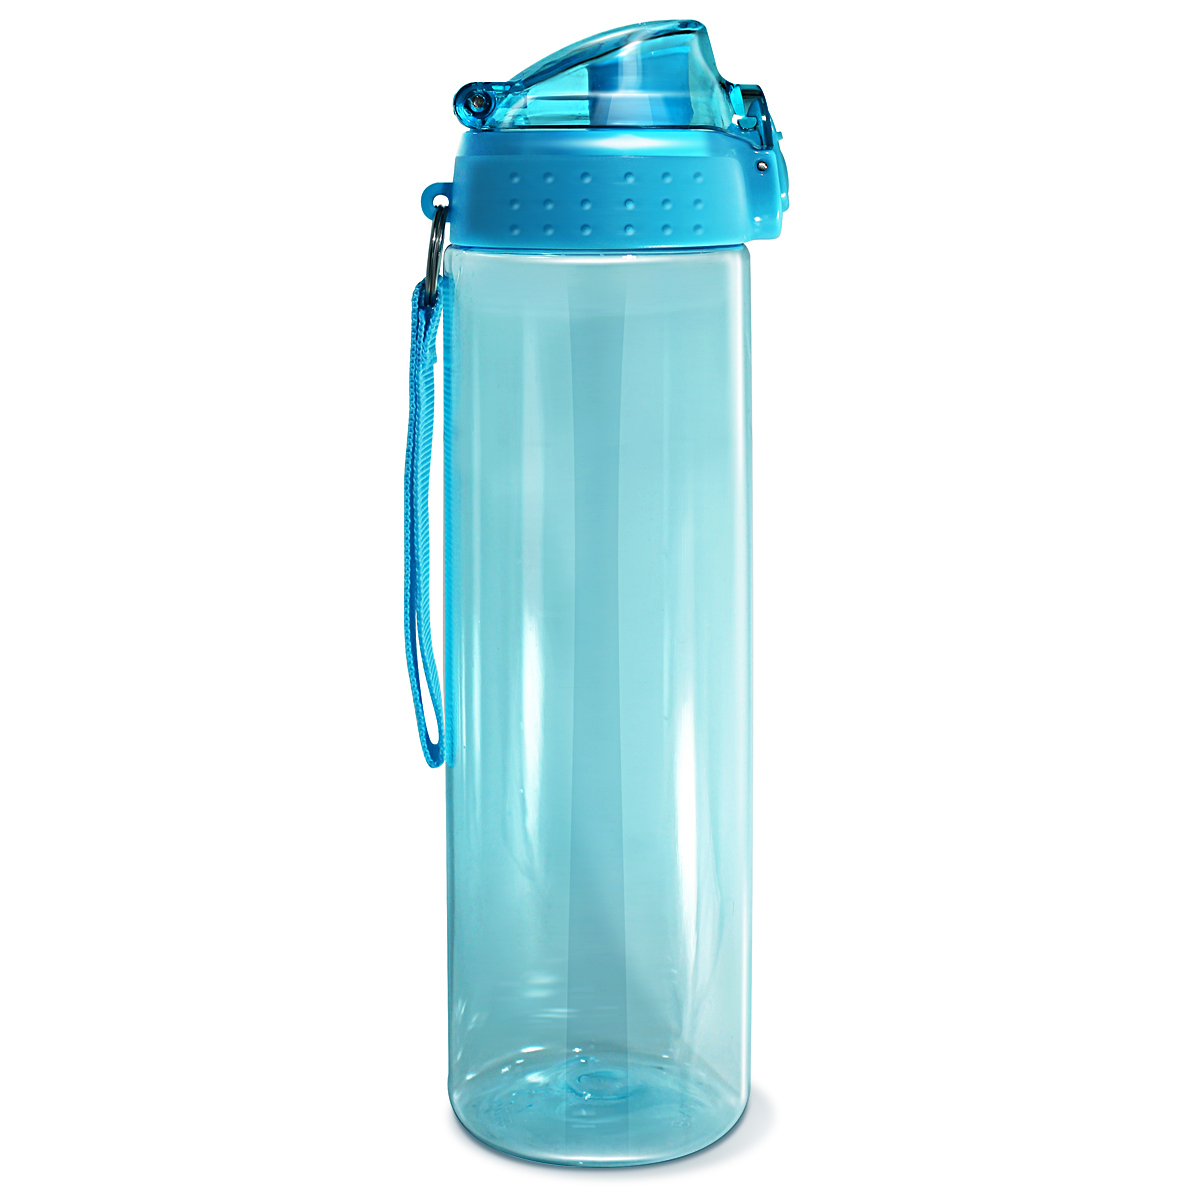 Бутылка для воды с стаканом. Спортивная бутылка sn2035 be first. Be first бутылка (sn2035) 700 мл, синий. Be first бутылка для воды Тритан. Бутылка для воды be first Тритан 900 мл, черная (sn2036-Black-nl).